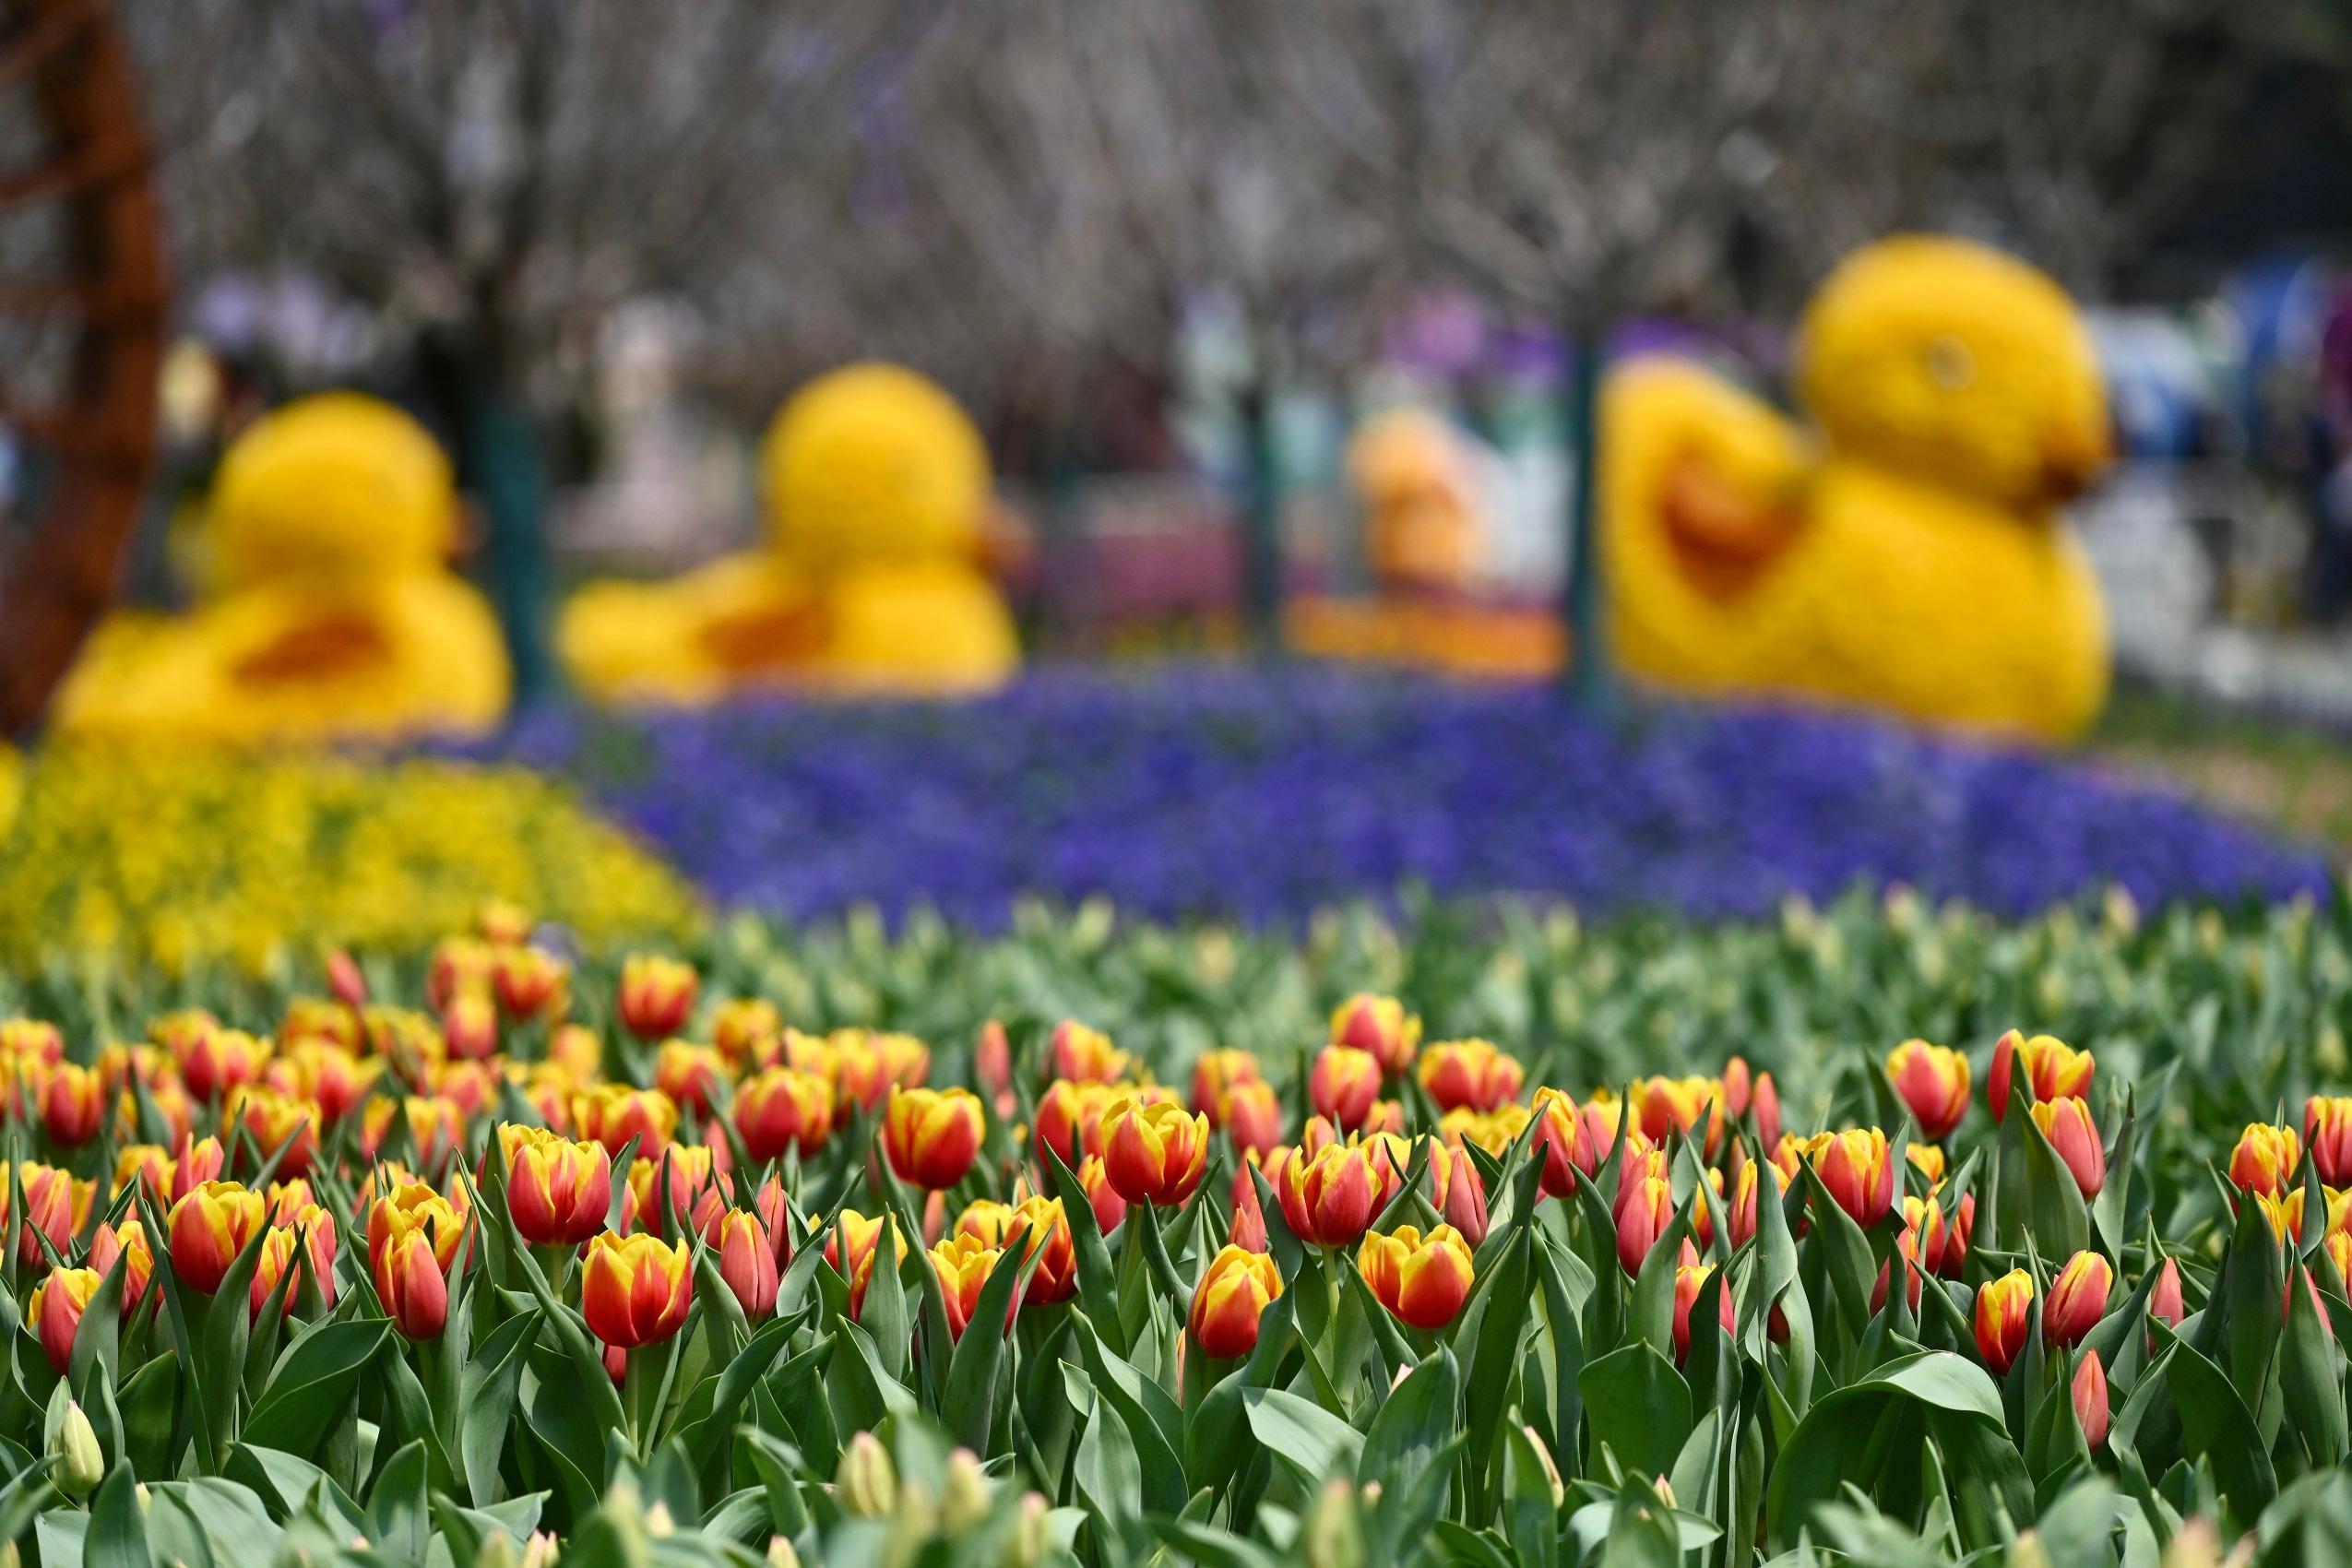 二零二三年香港花卉展覽（花展）明日（三月十日）至三月十九日在維多利亞公園舉行。今年花展的主題花是繡球花，以「繡麗綻放、幸福滿載」為主題。圖示深受歡迎的鬱金香花海，將繼續成為遊人「打卡」熱點。